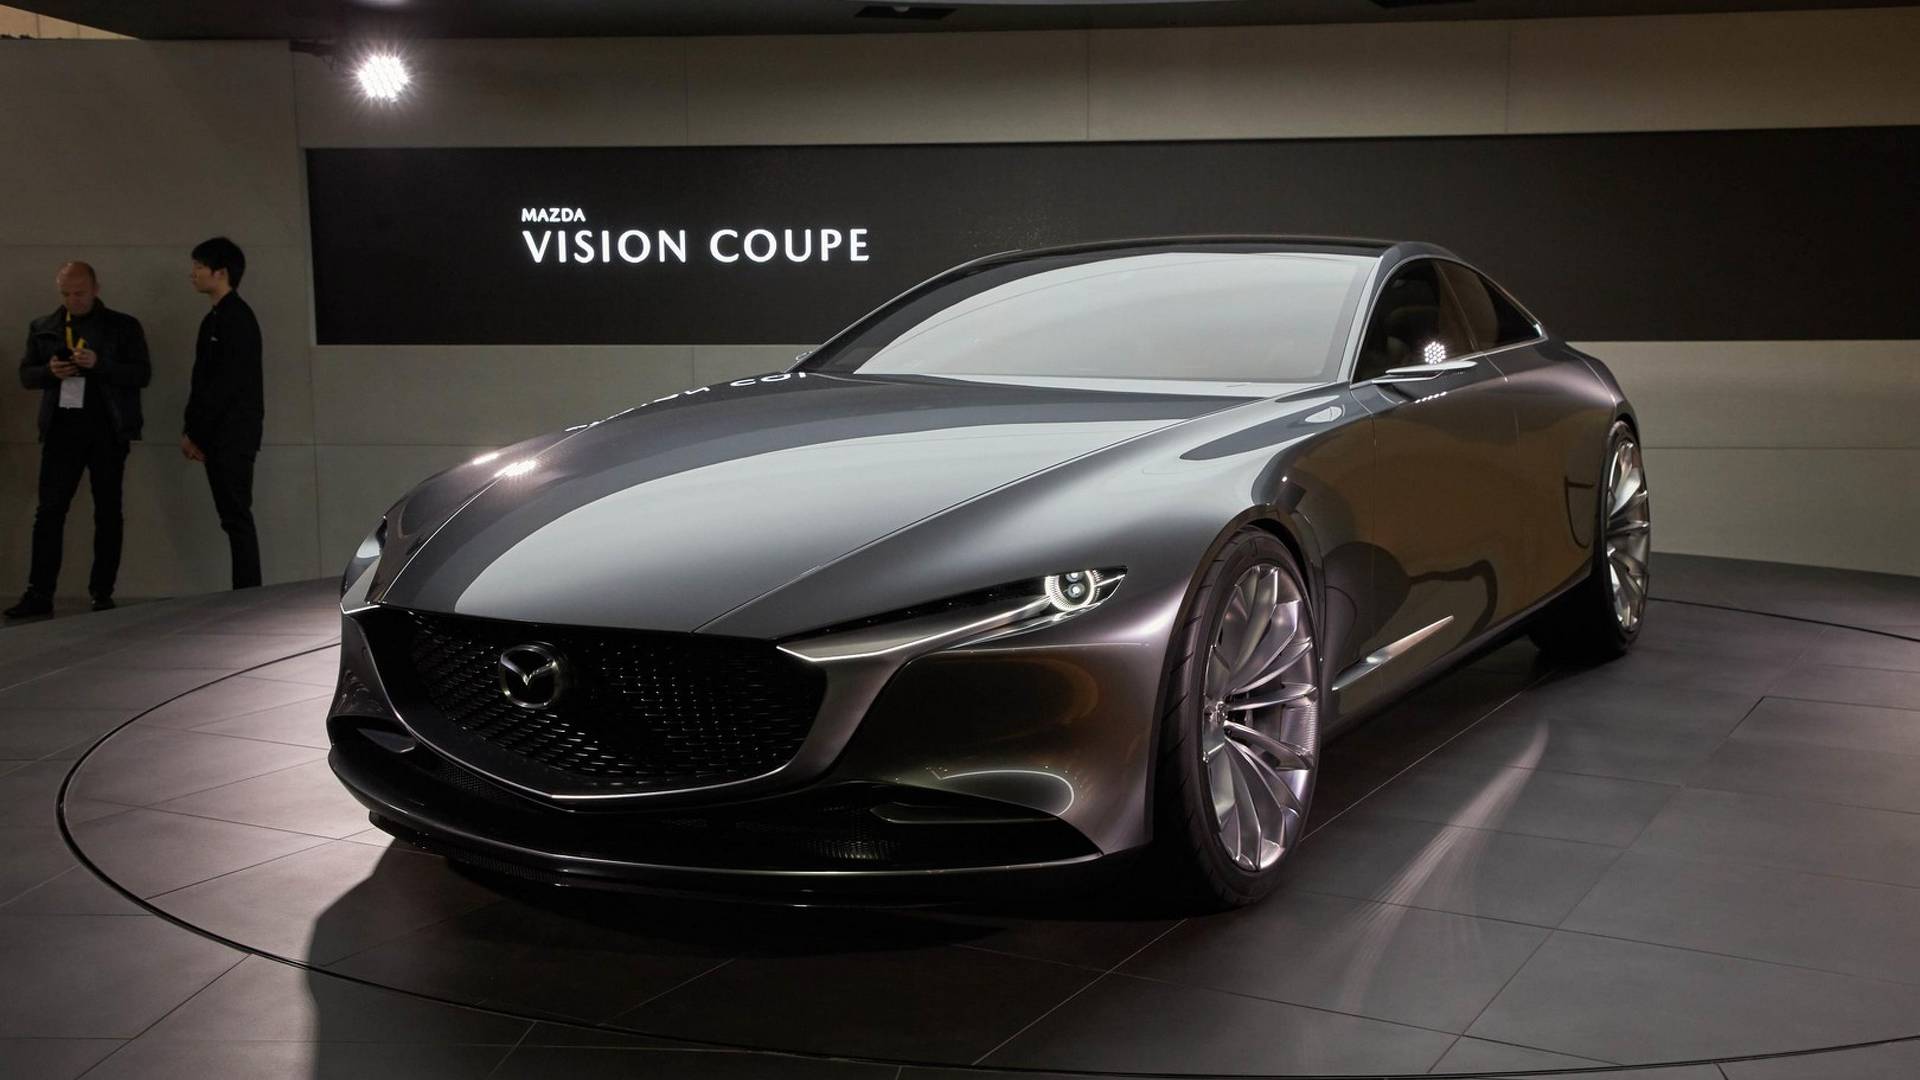 Mazda6 đời mới với thiết kế lột xác, đi kèm hệ dẫn động cầu sau sắp ra mắt mazda-vision-coupe-concept.jpg